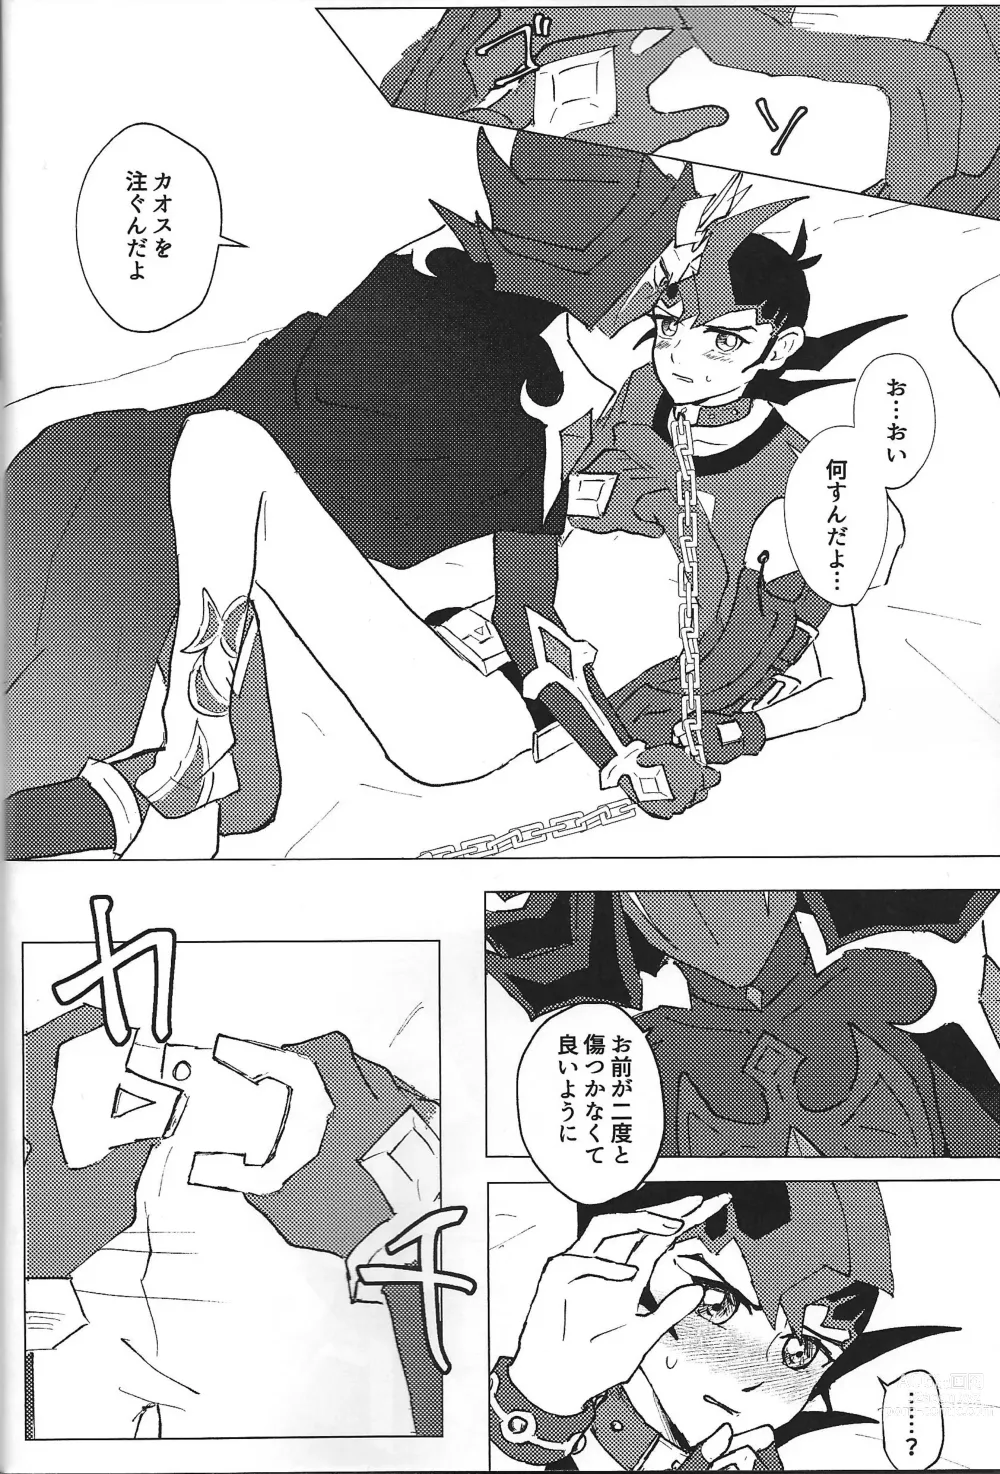 Page 34 of doujinshi ChaosPhantasma